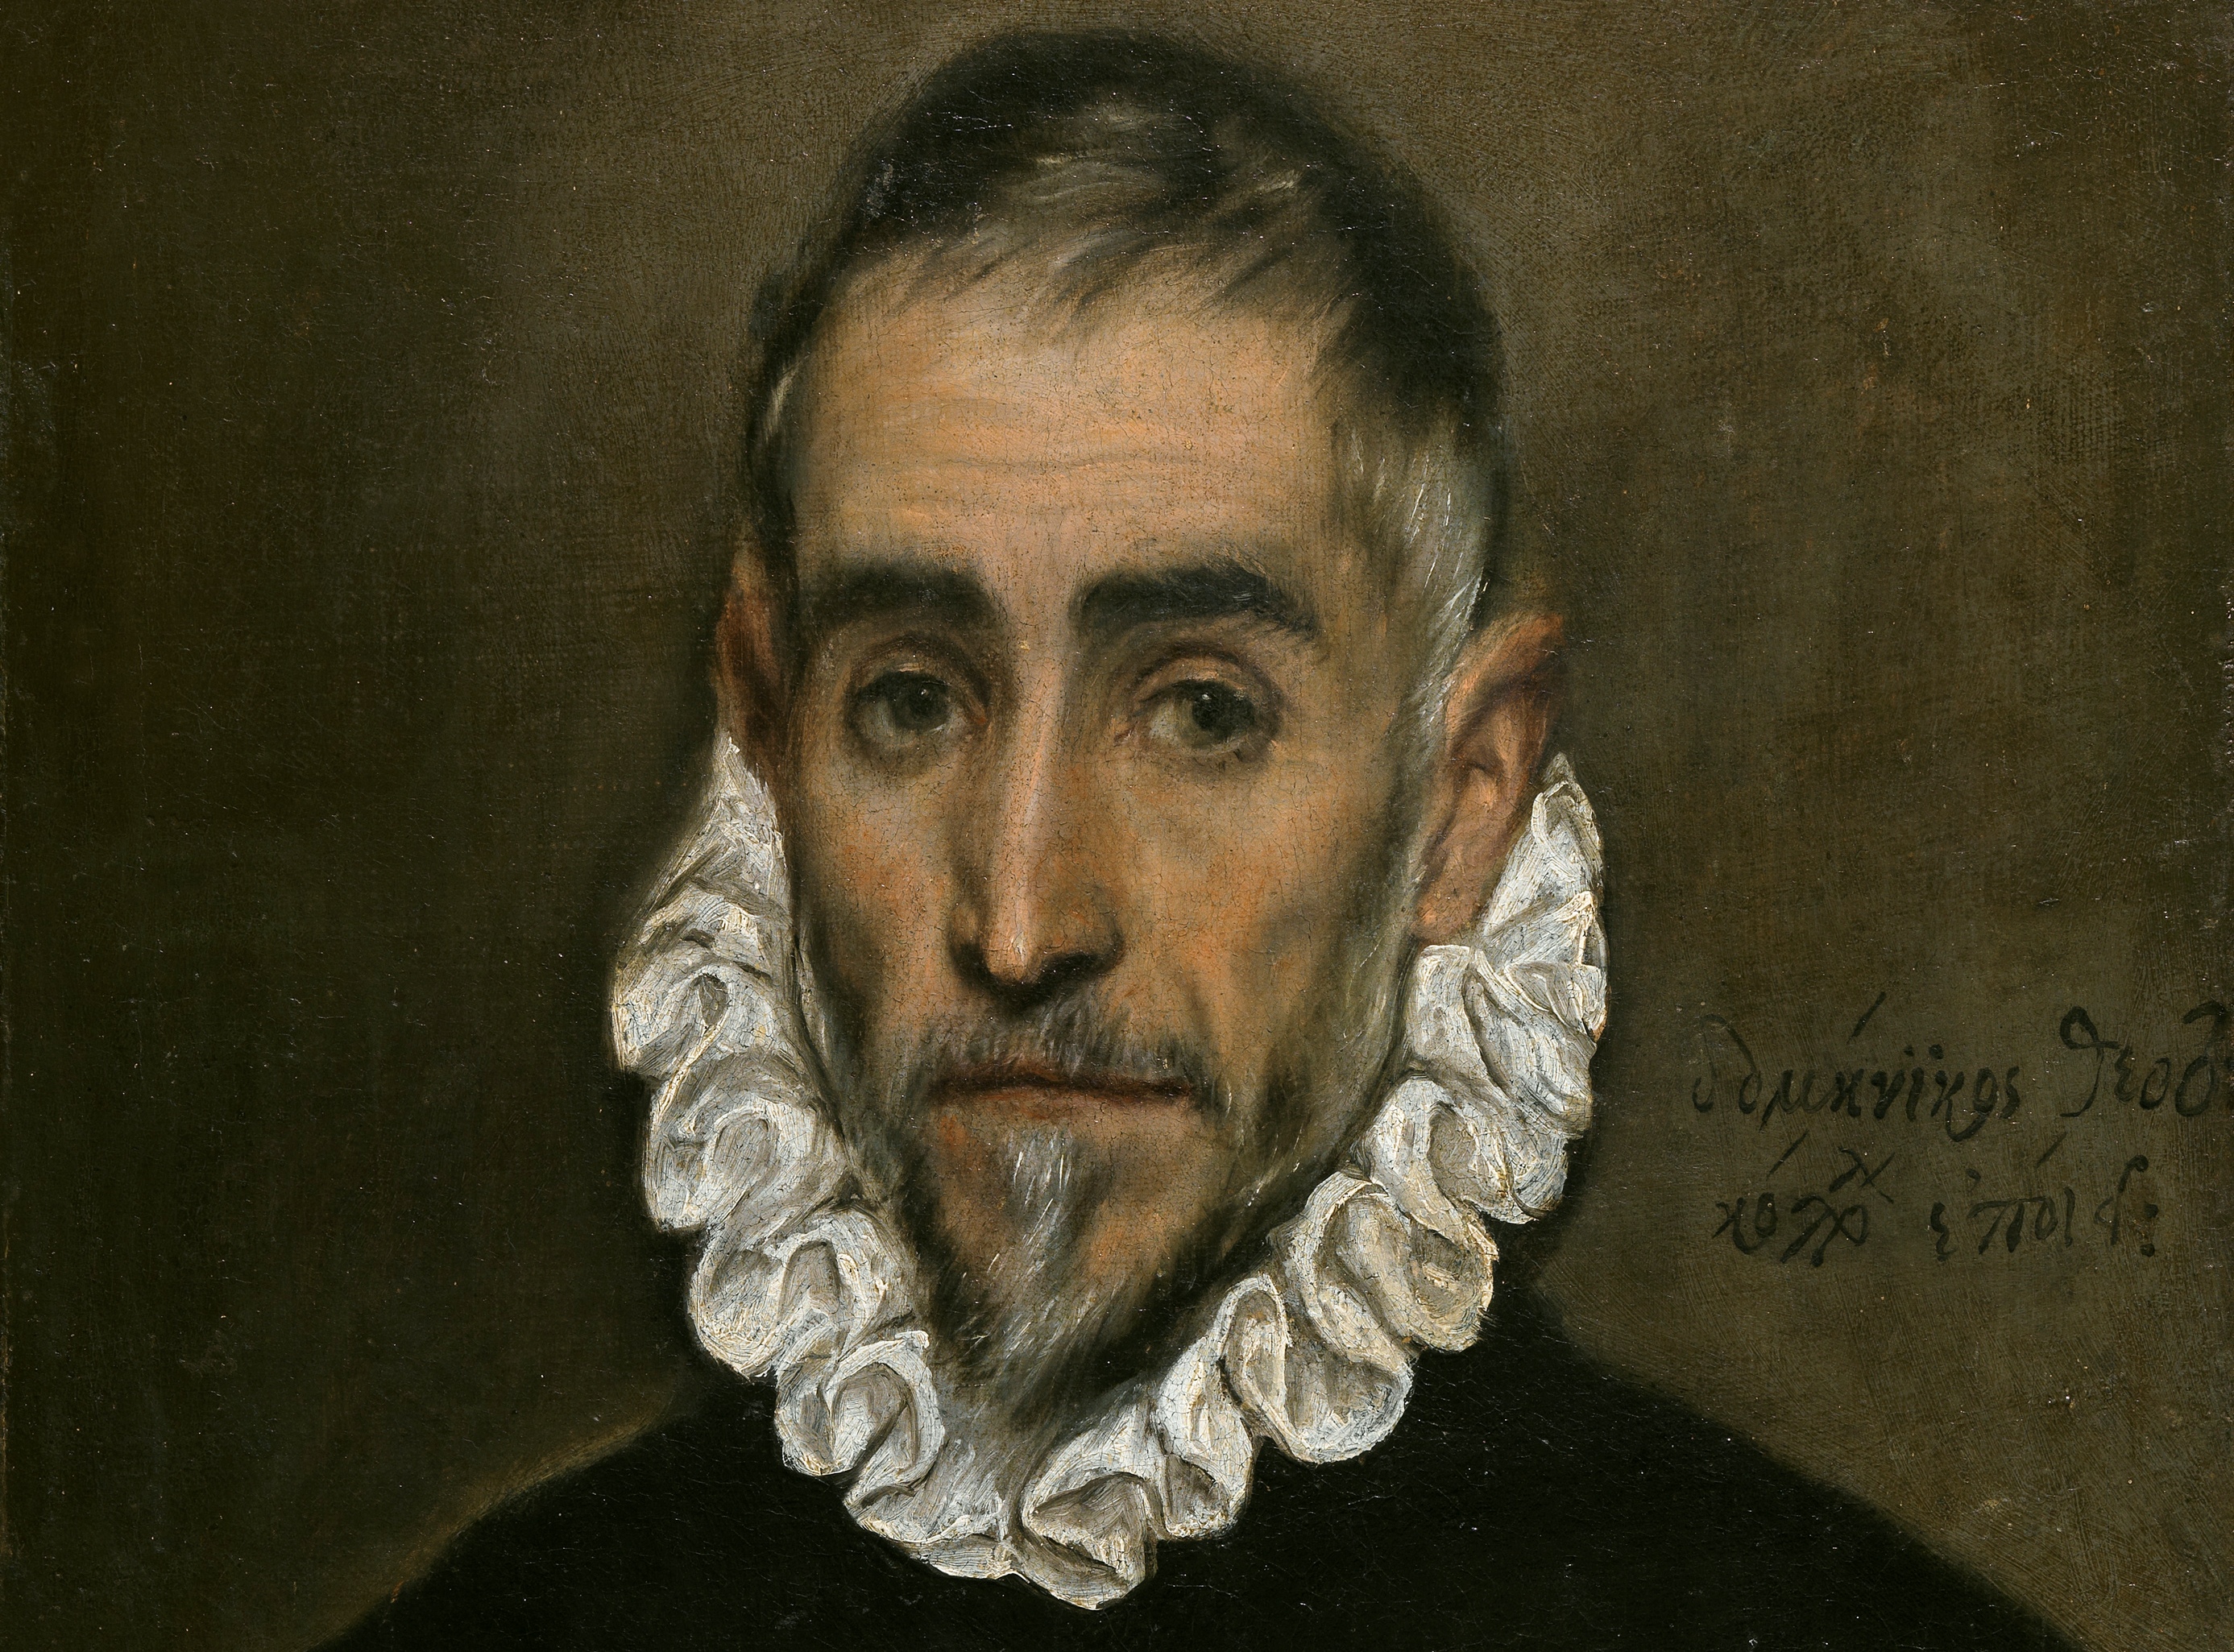 Προβολή της νέας ταινίας του Λ. Χαρωνίτη «El Greco – Προσωπογραφίες»